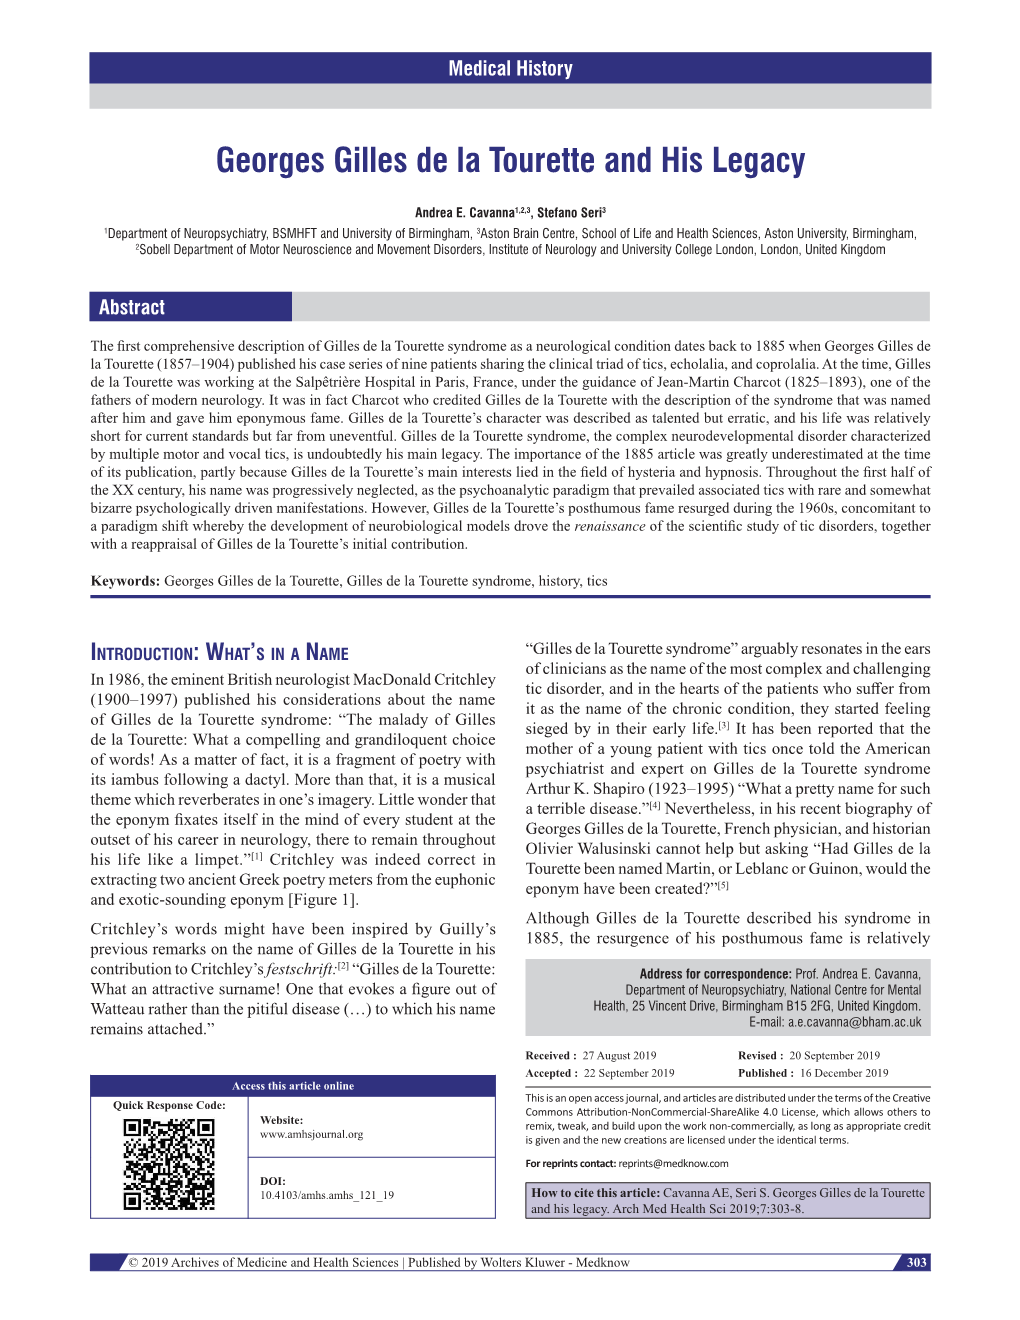 Georges Gilles De La Tourette and His Legacy